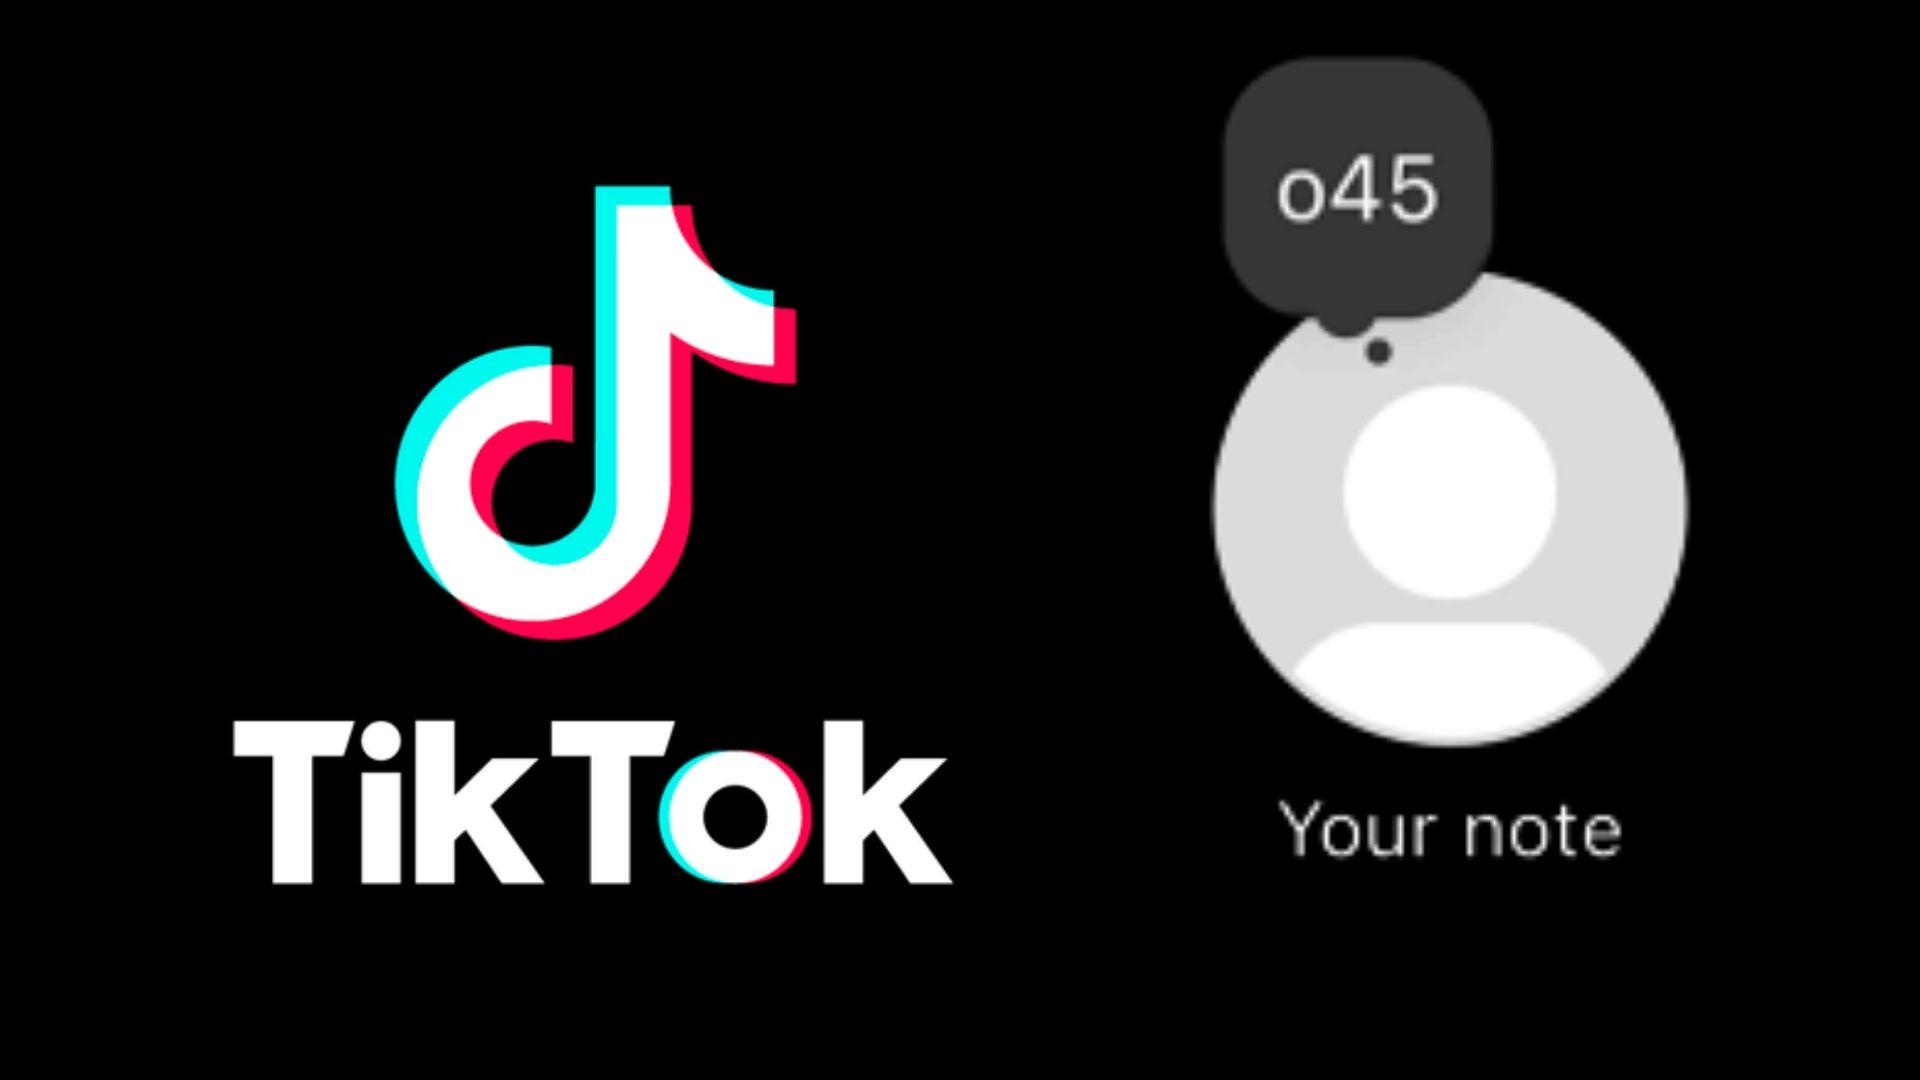 TikTok logo next to o45 note from Instagram